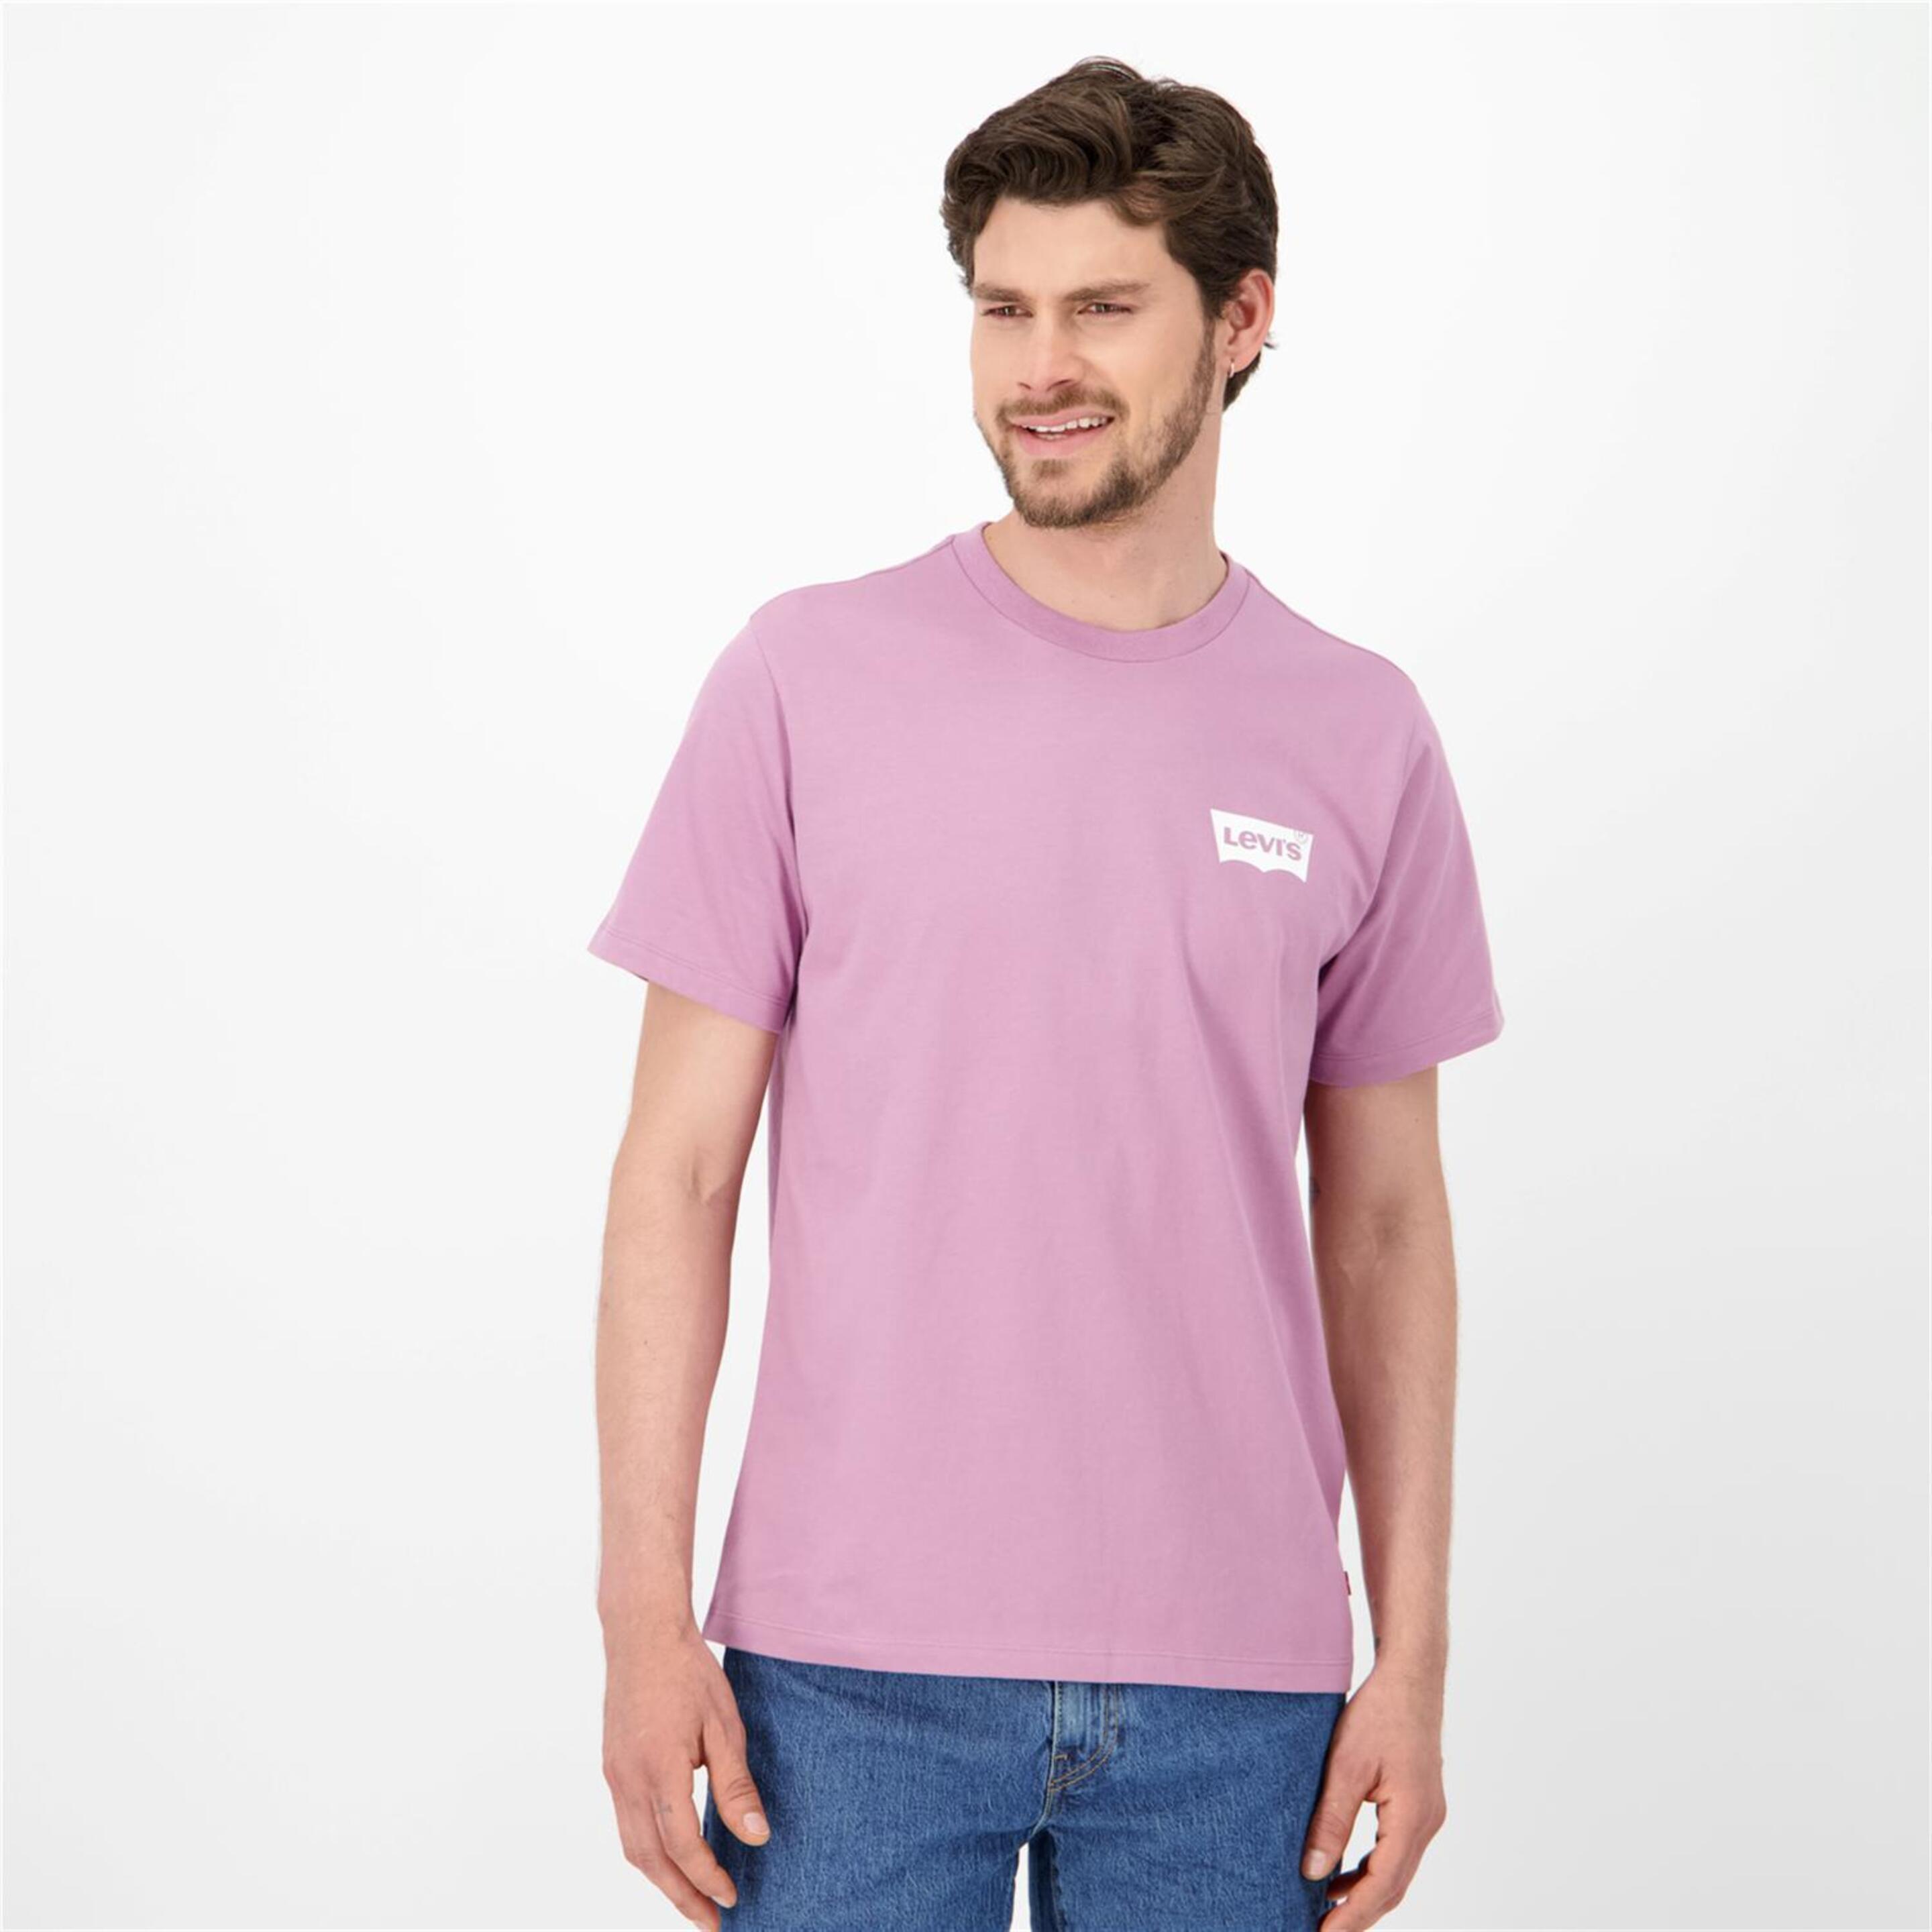 Levi's Graphic - morado - Camiseta Hombre